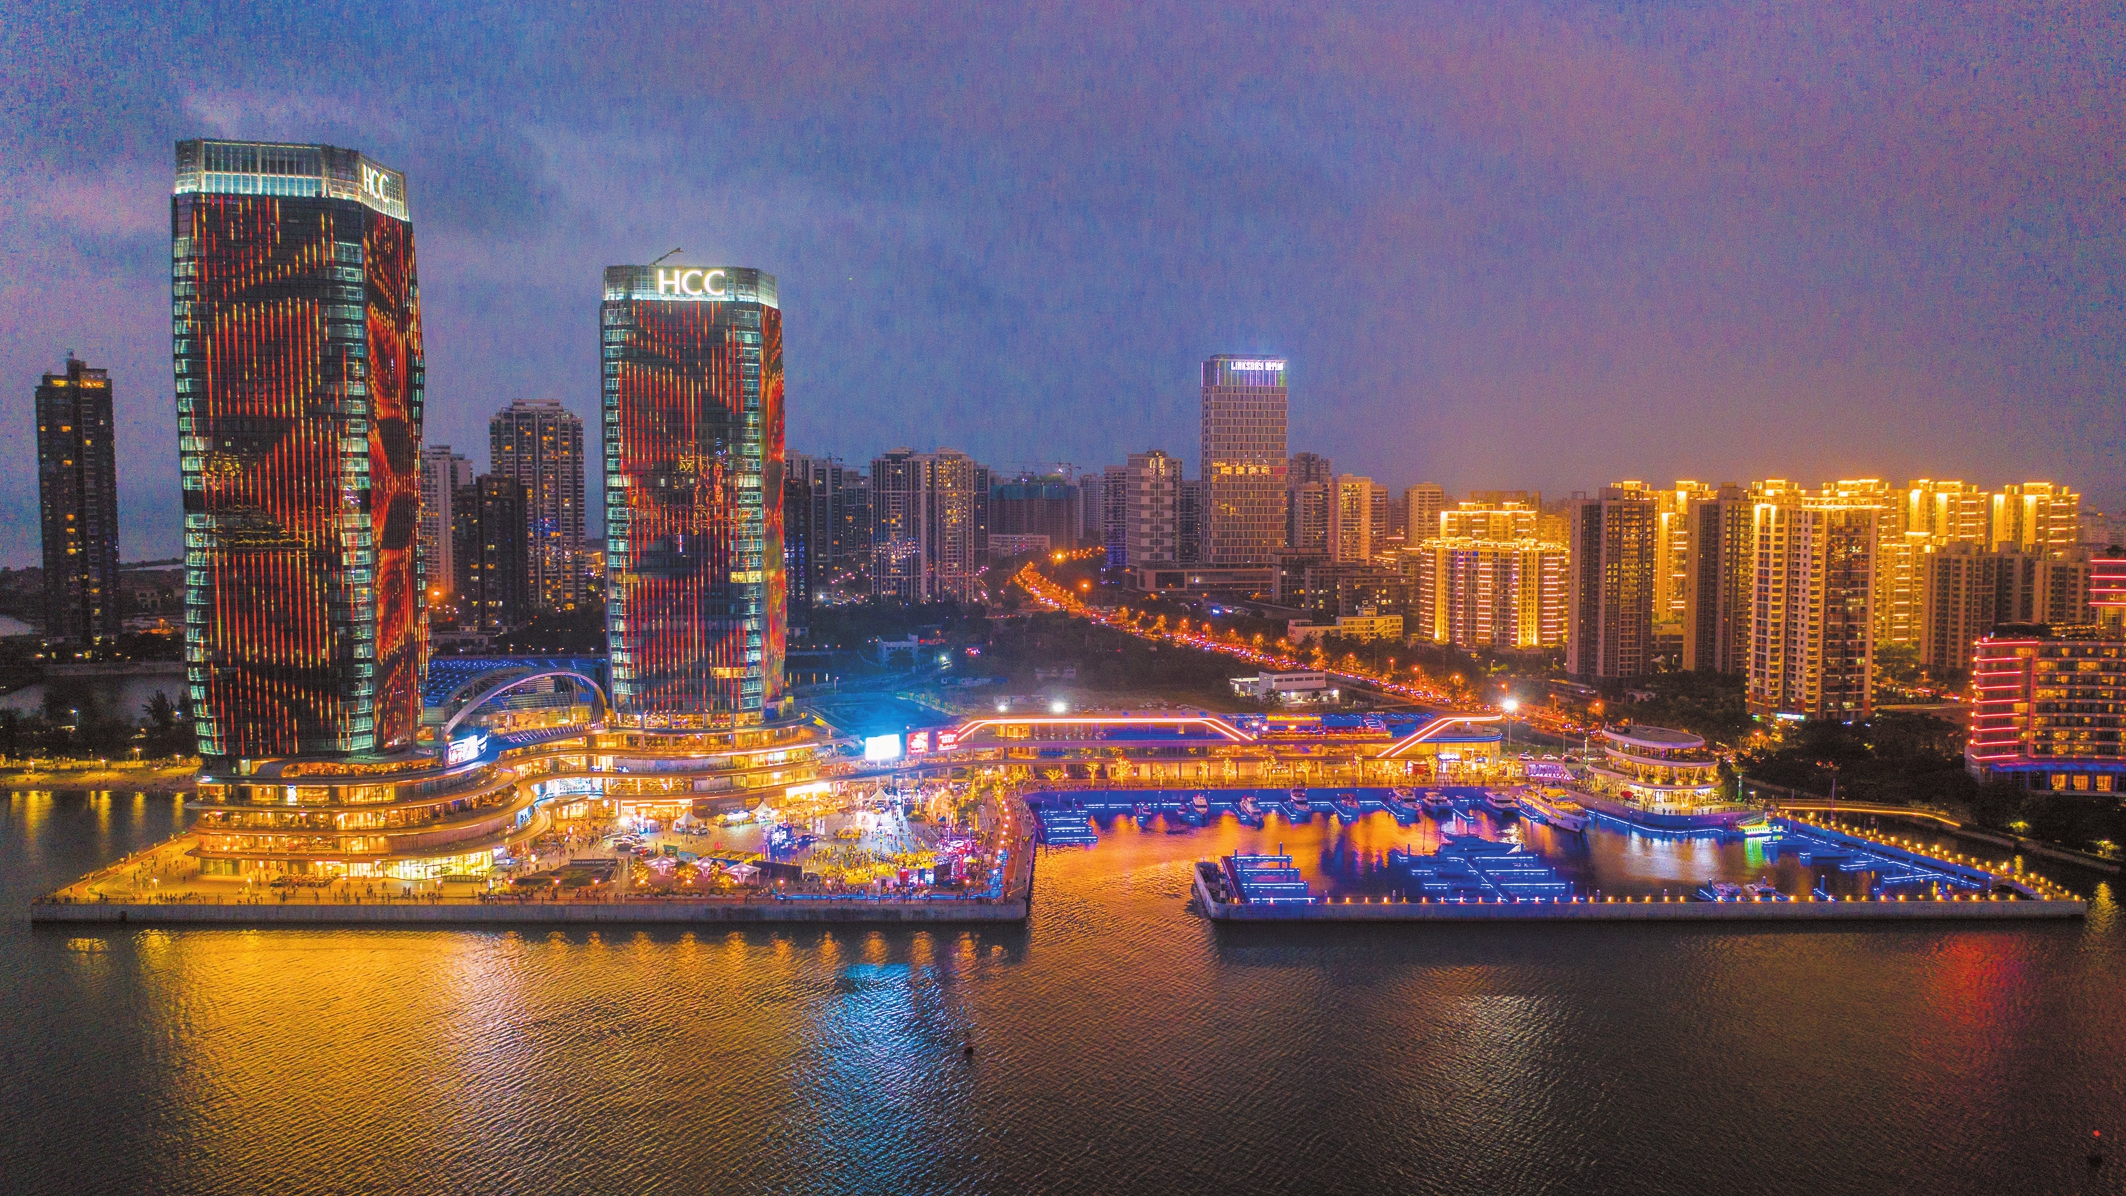 5月1日晚,华彩·海口湾广场举行的华彩之夜灯光秀,为市民游客带来了